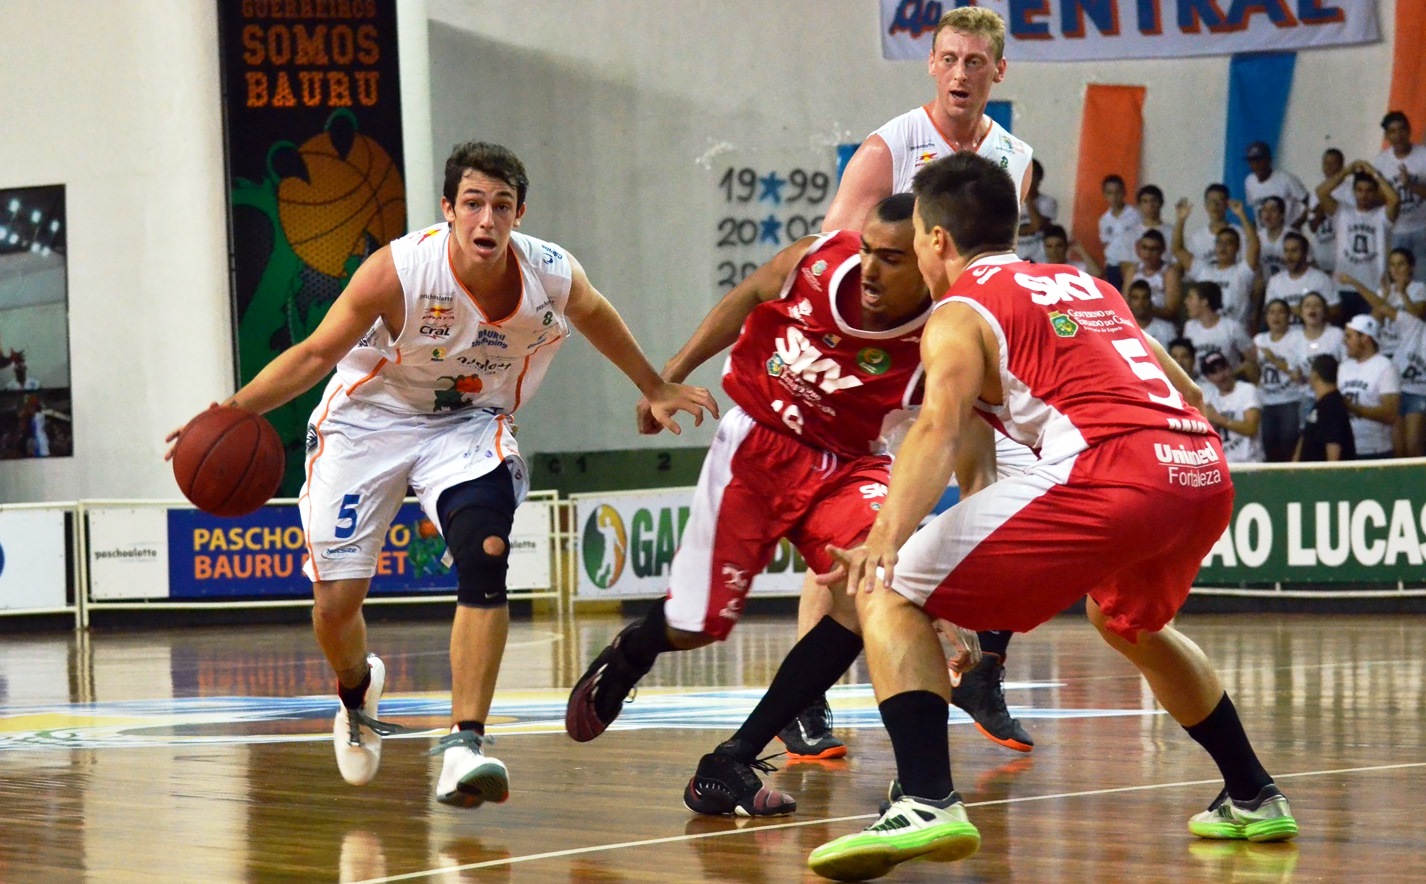 Oitavo e nono colocados na fase de classificação, respectivamente, Bauru e Basquete Cearense fazem uma das séries de oitavas de final (Caio Casagrande/Bauru Basket)